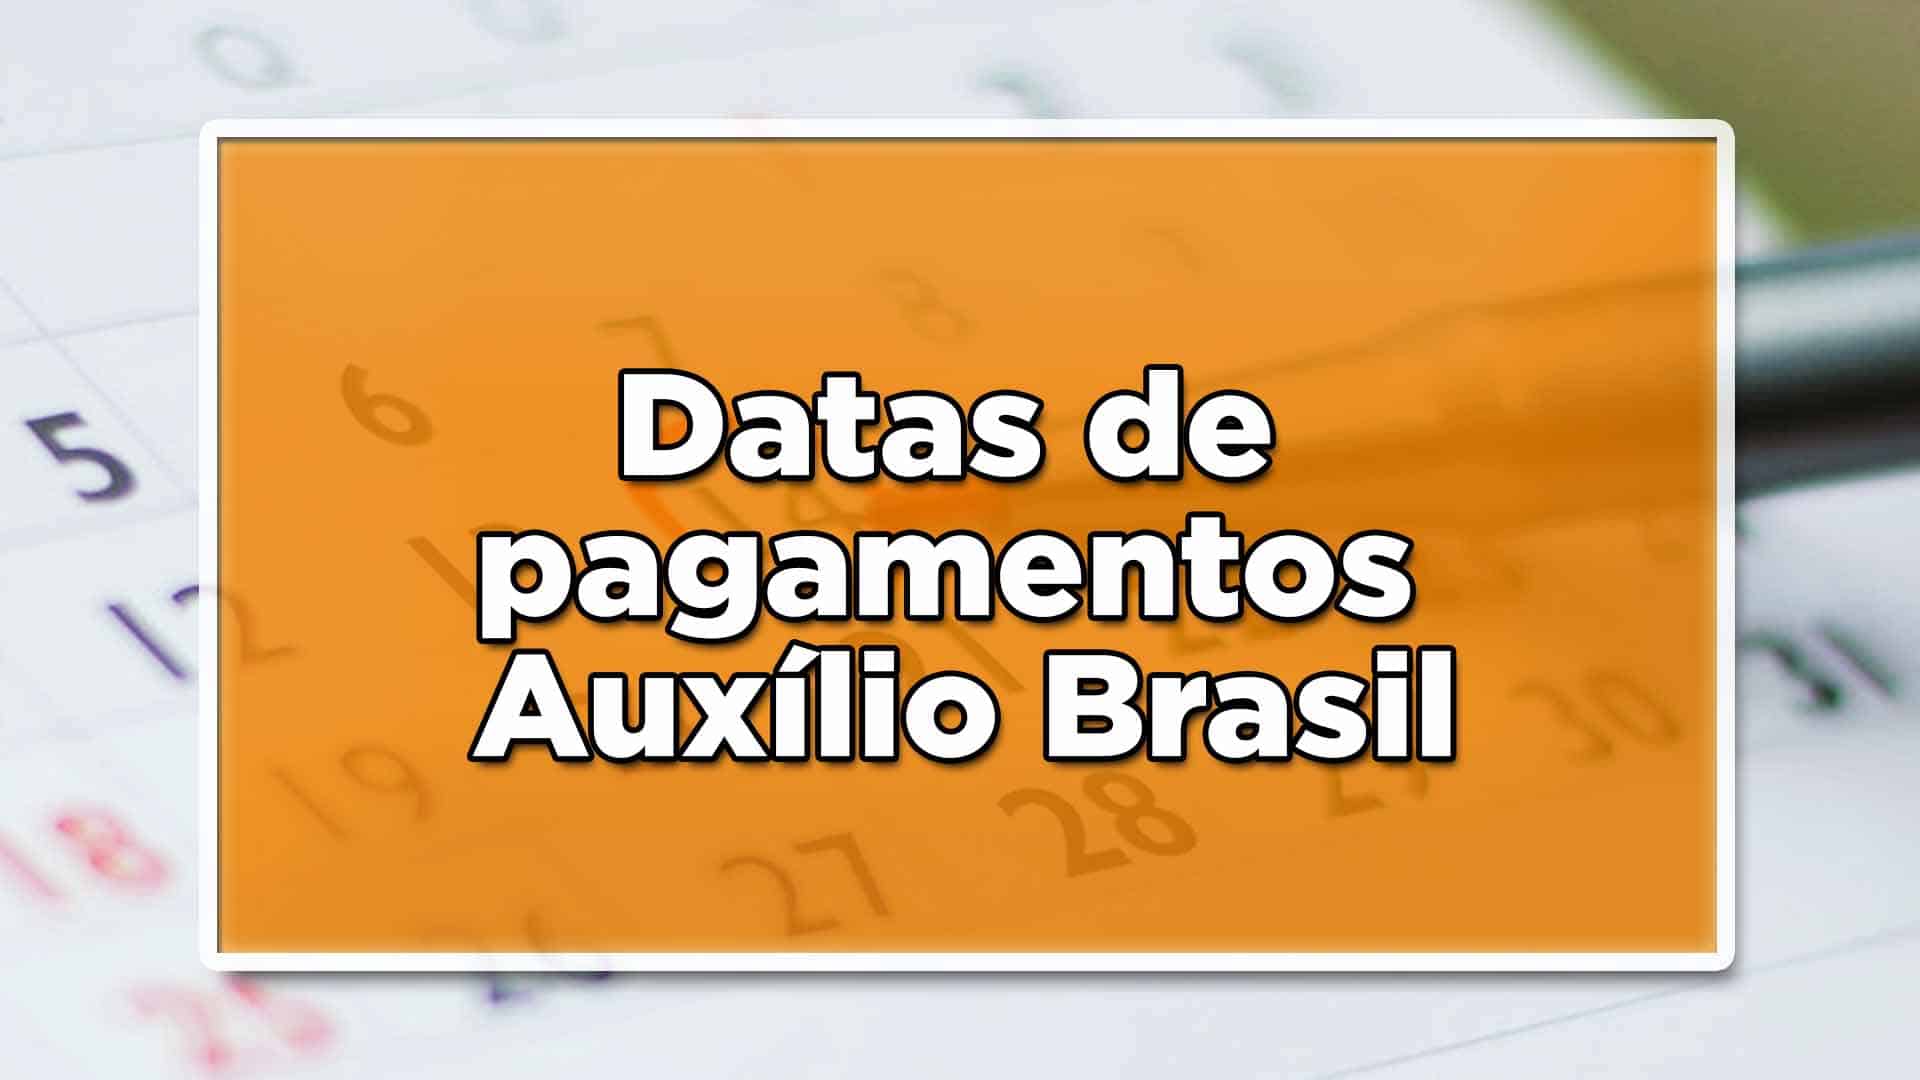 Brasileiros que se encontram inscritos no cadastro único, nessa próxima semana, serão contemplados pelos pagamentos do Auxílio Brasil! Confira: